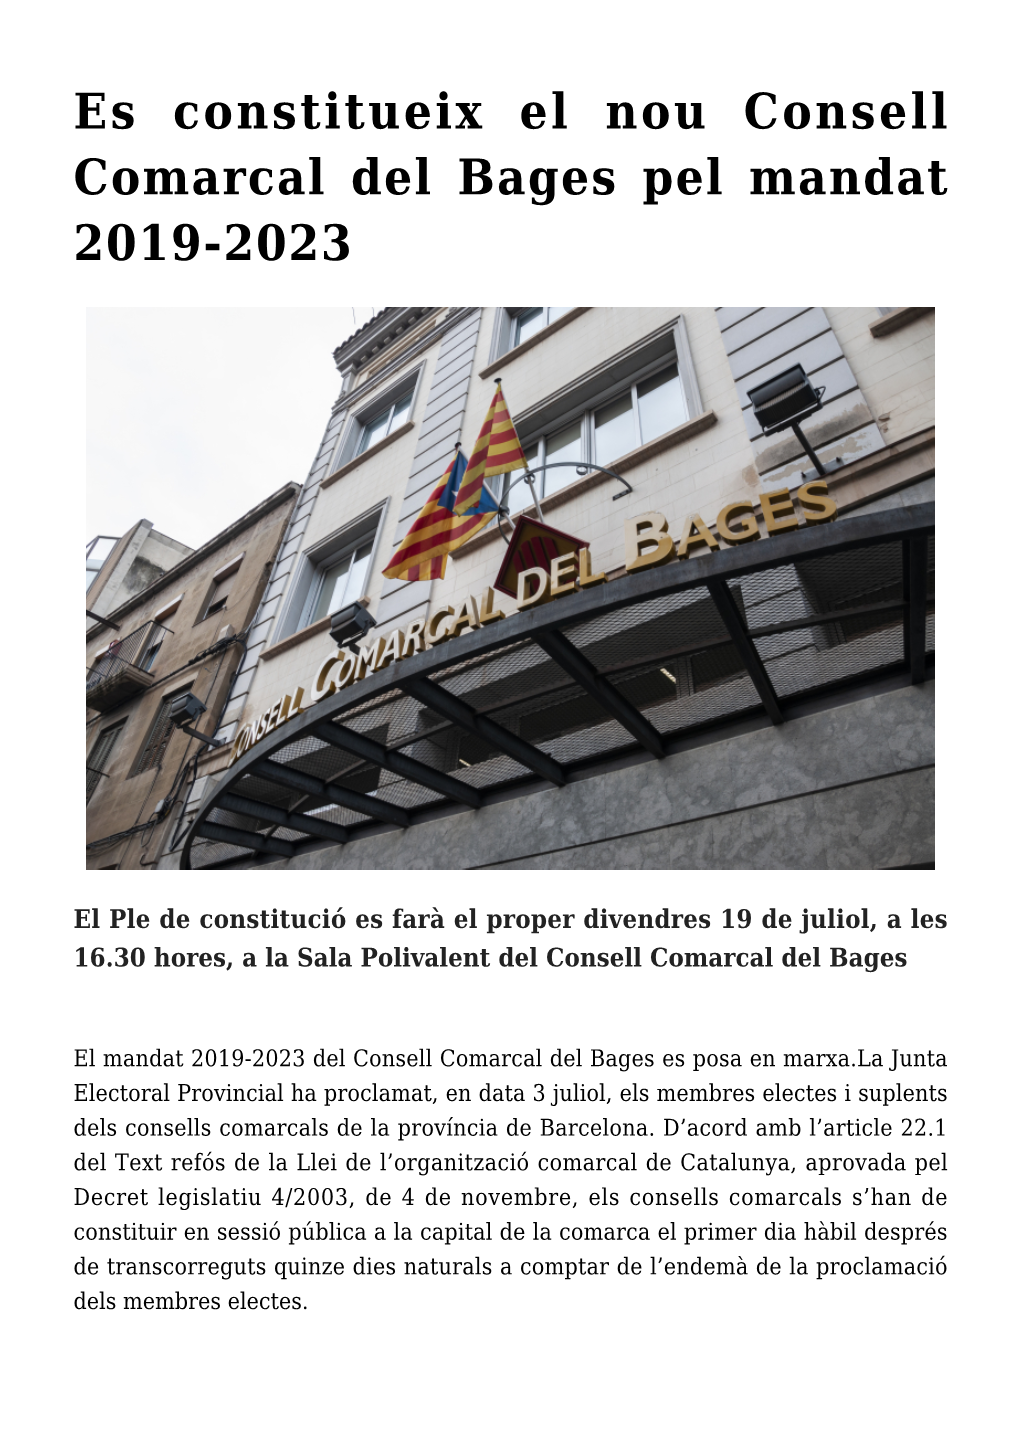 Es Constitueix El Nou Consell Comarcal Del Bages Pel Mandat 2019-2023